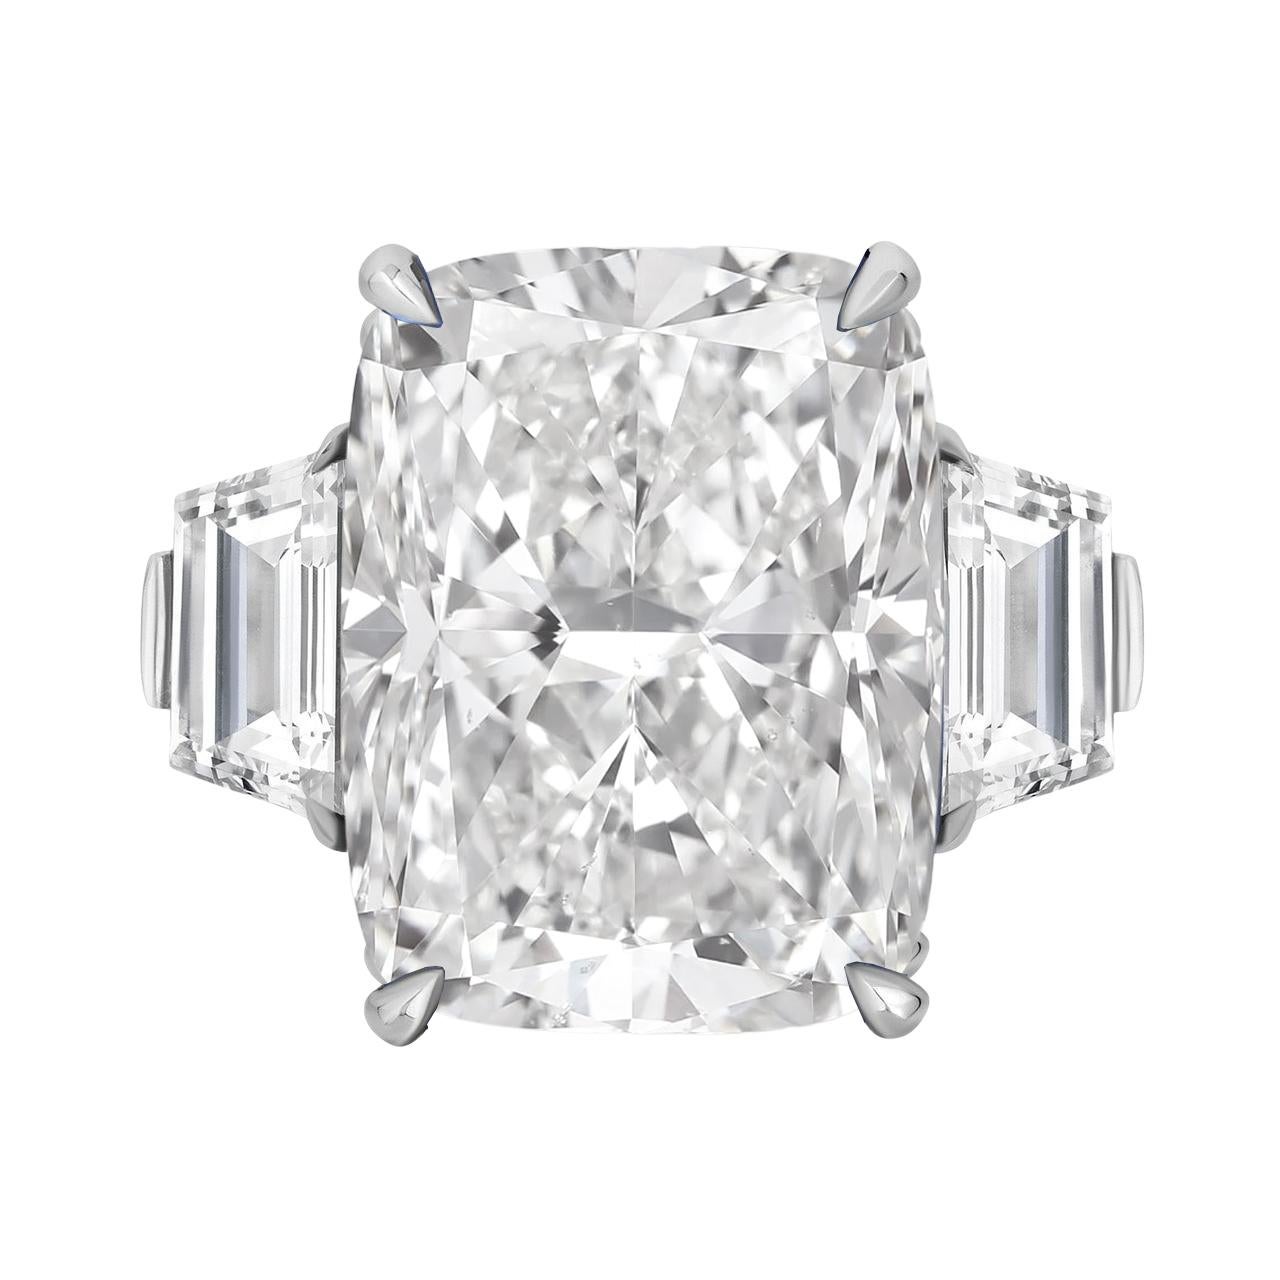 Entdecken Sie den Gipfel der Diamantenkunst mit diesem außergewöhnlichen 10-Karat-Ring mit Kissenschliff, einem Zeugnis zeitloser Eleganz. Dieses bemerkenswerte Stück wurde vom Gemological Institute of America (GIA) zertifiziert und besitzt eine